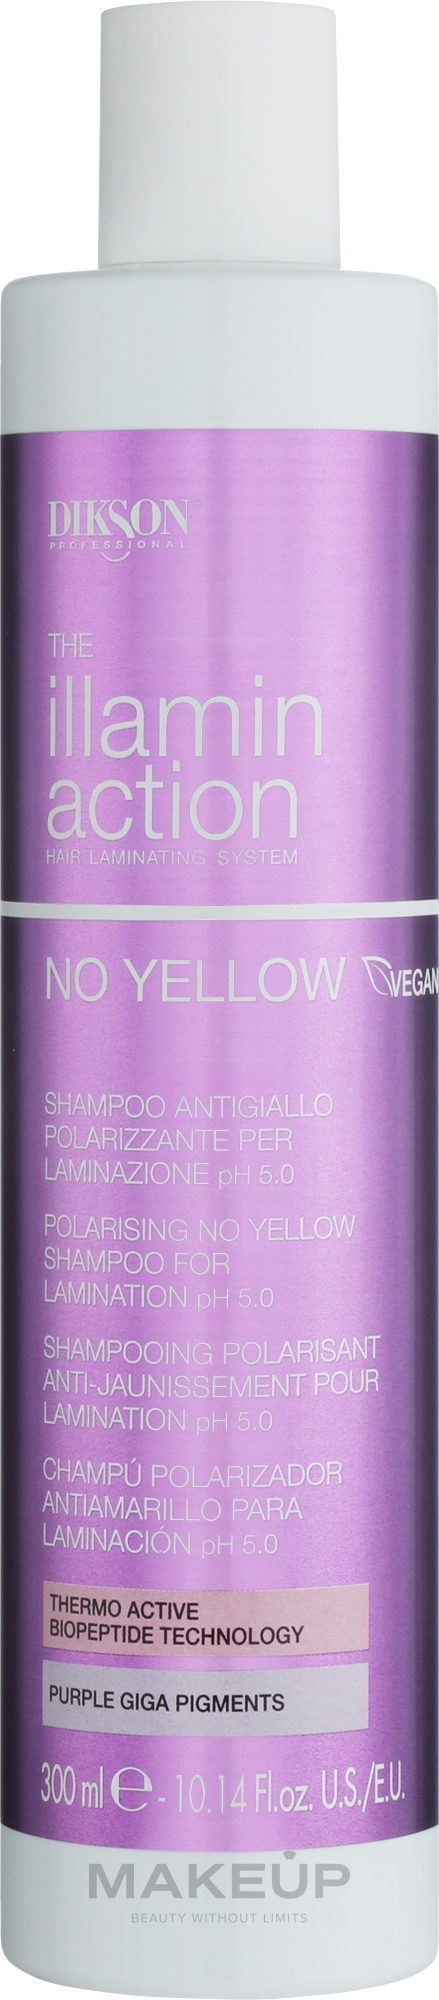 Szampon neutralizujący żółte odcienie do laminowania włosów - Dikson Illaminaction No Yellow Polarising No Yellow Shampoo For Lamination pH 5.5 — Zdjęcie 300 ml